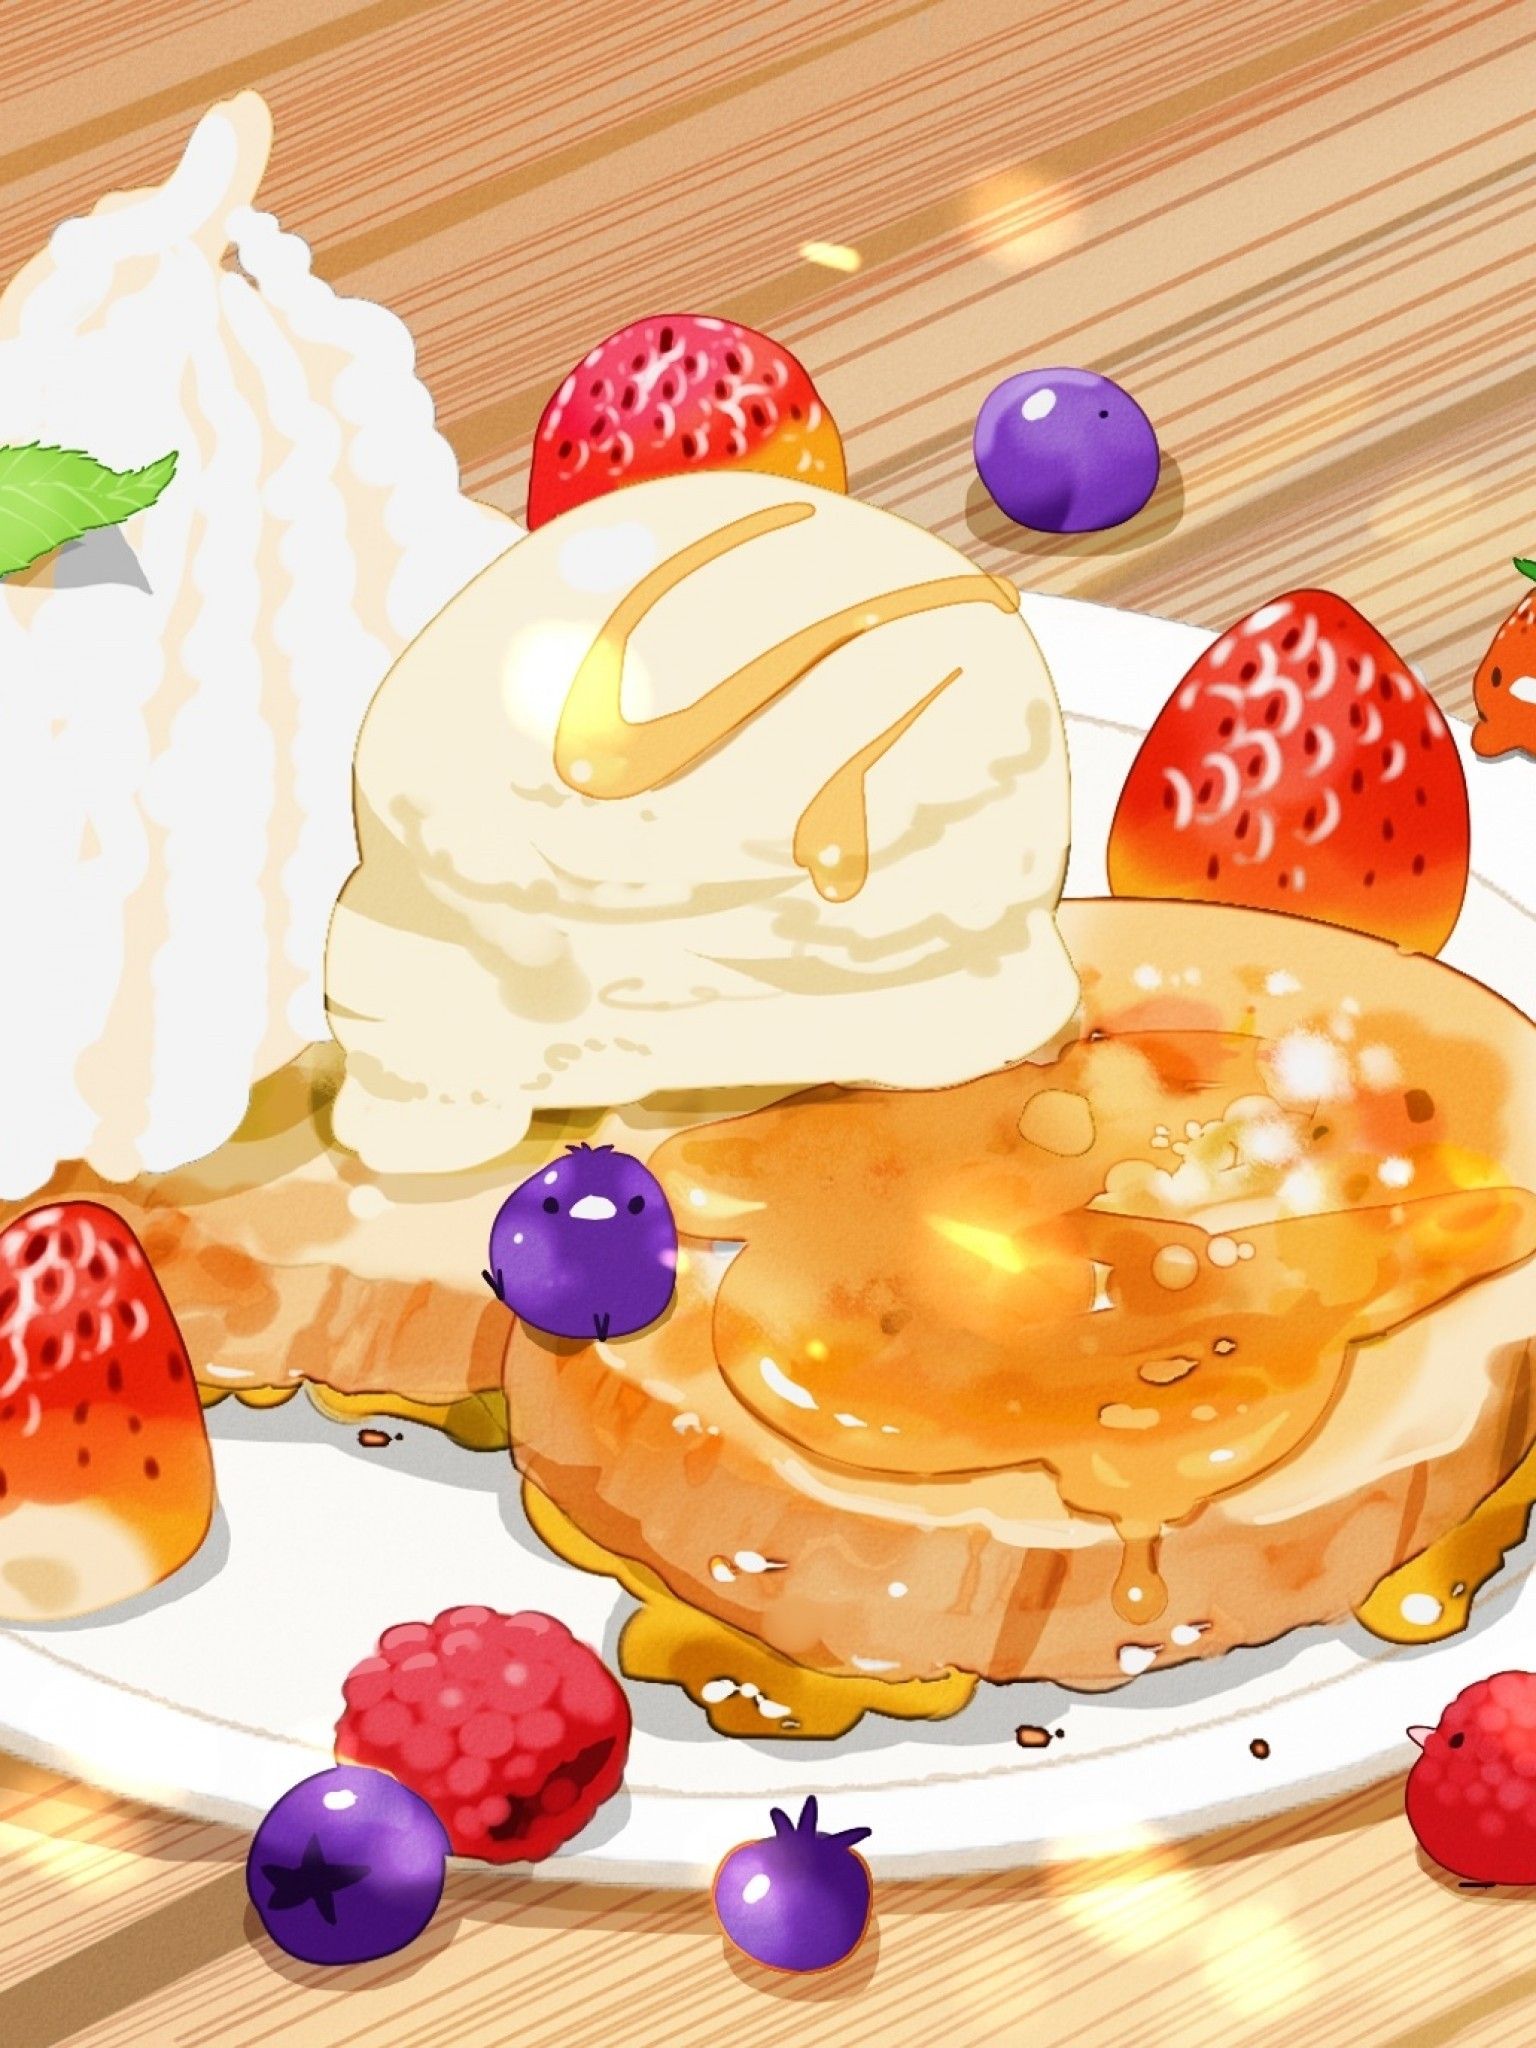 Anime Cake Wallpaper